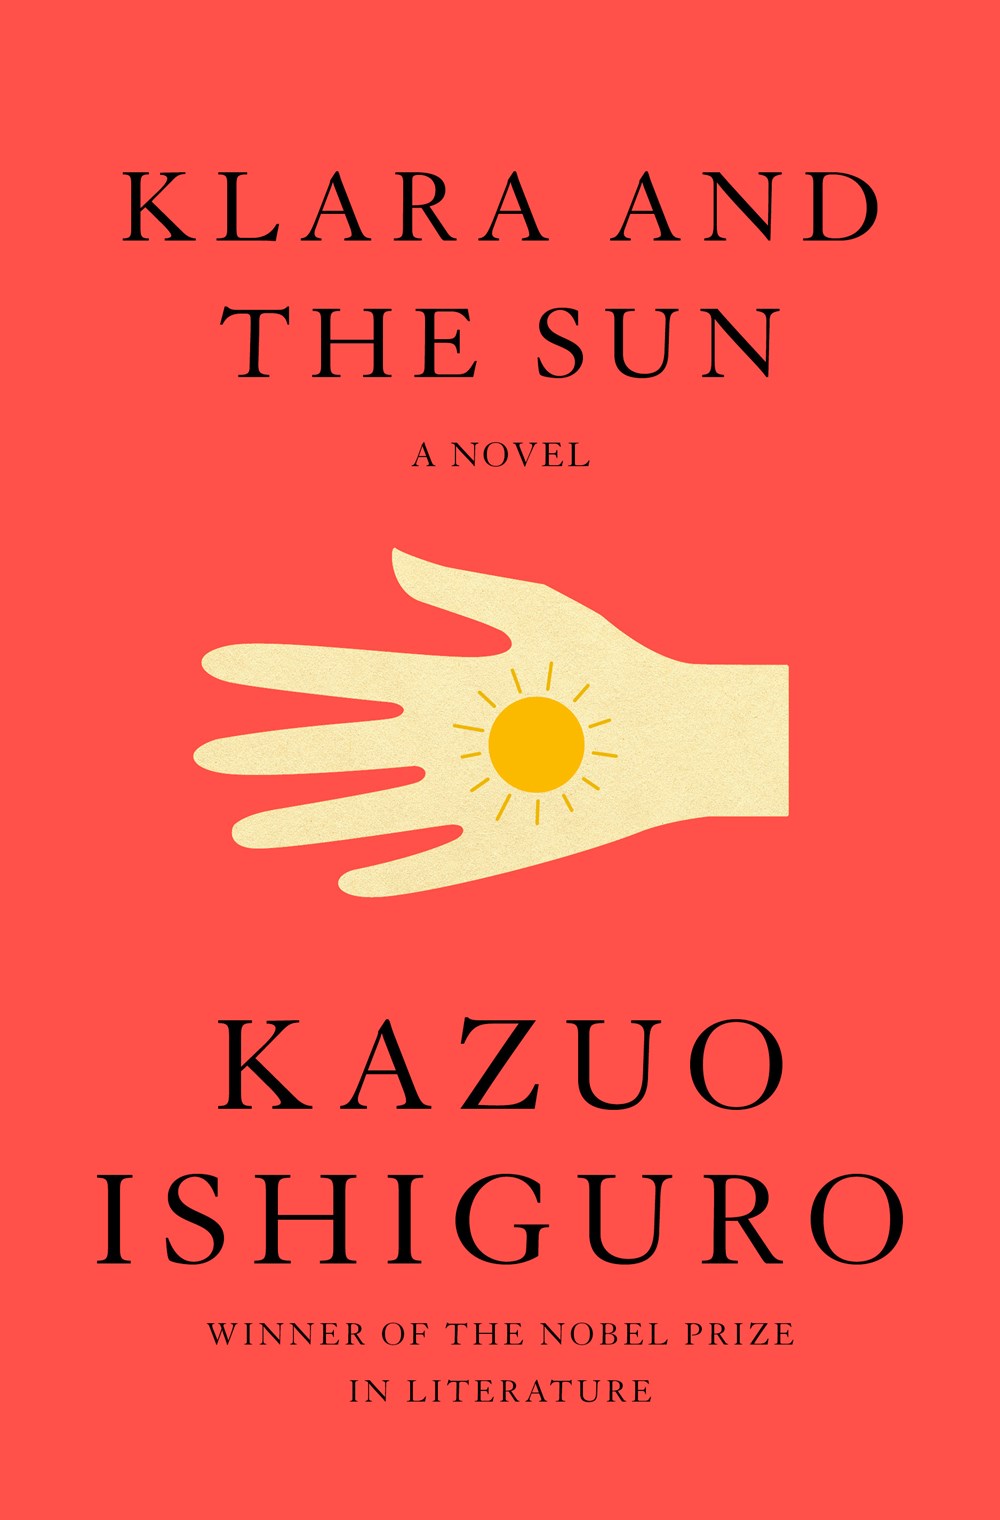 Kazuo Ishiguro Wins the Tähtivaeltaja Award | Book Pulse